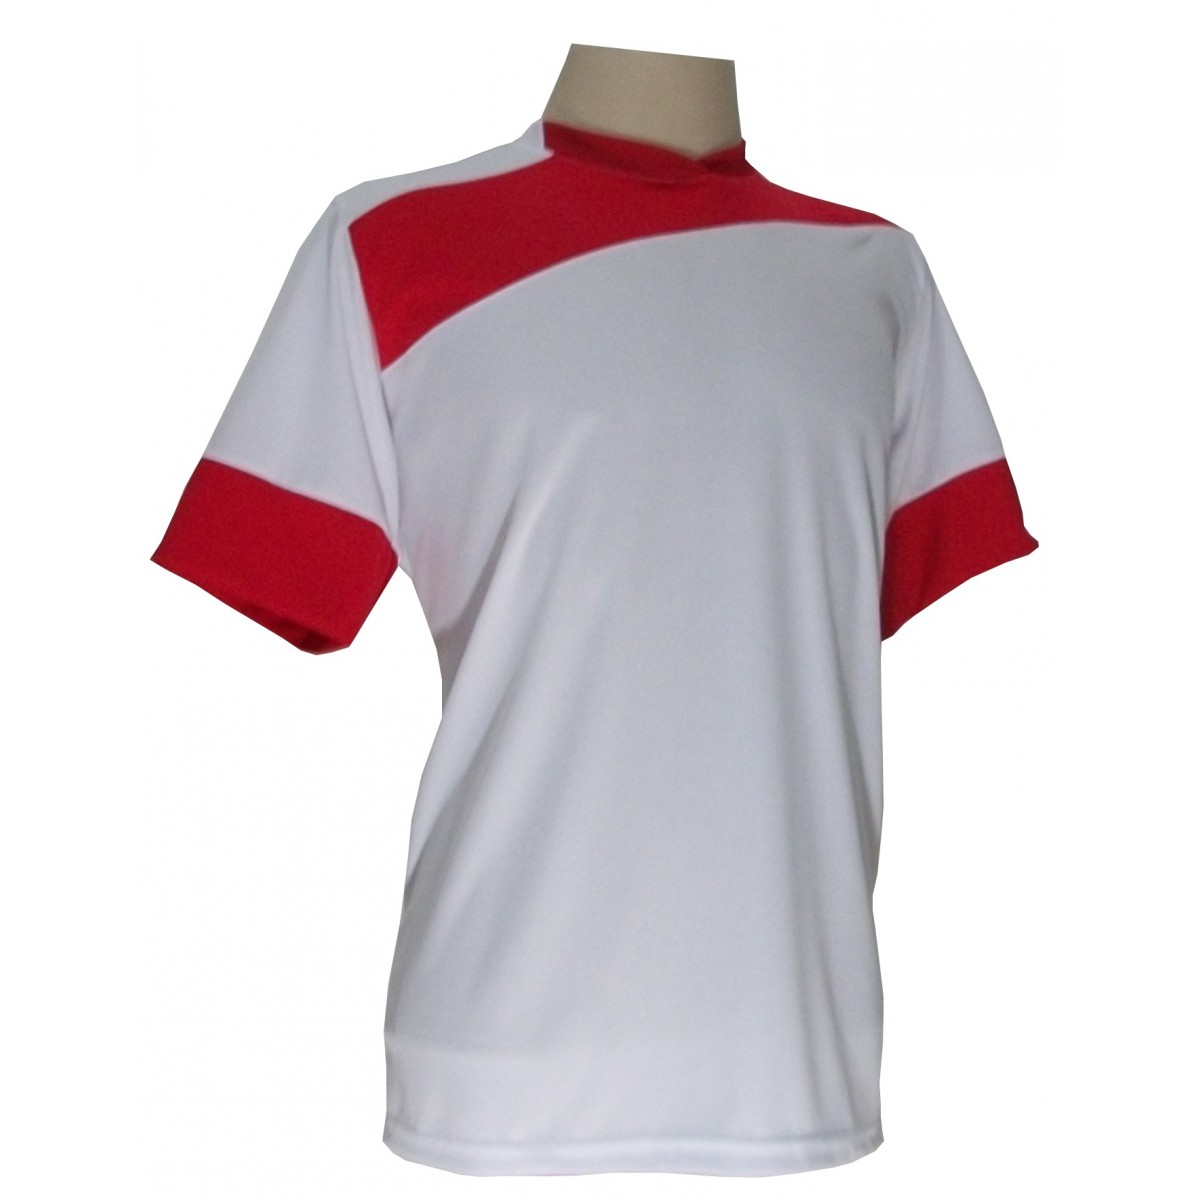 Uniforme Esportivo Completo modelo Sporting 14+1 (14 camisas Branco/Vermelho + 14 calções Madrid Branco + 14 pares de meiões Vermelhos + 1 conjunto de goleiro) + Brindes